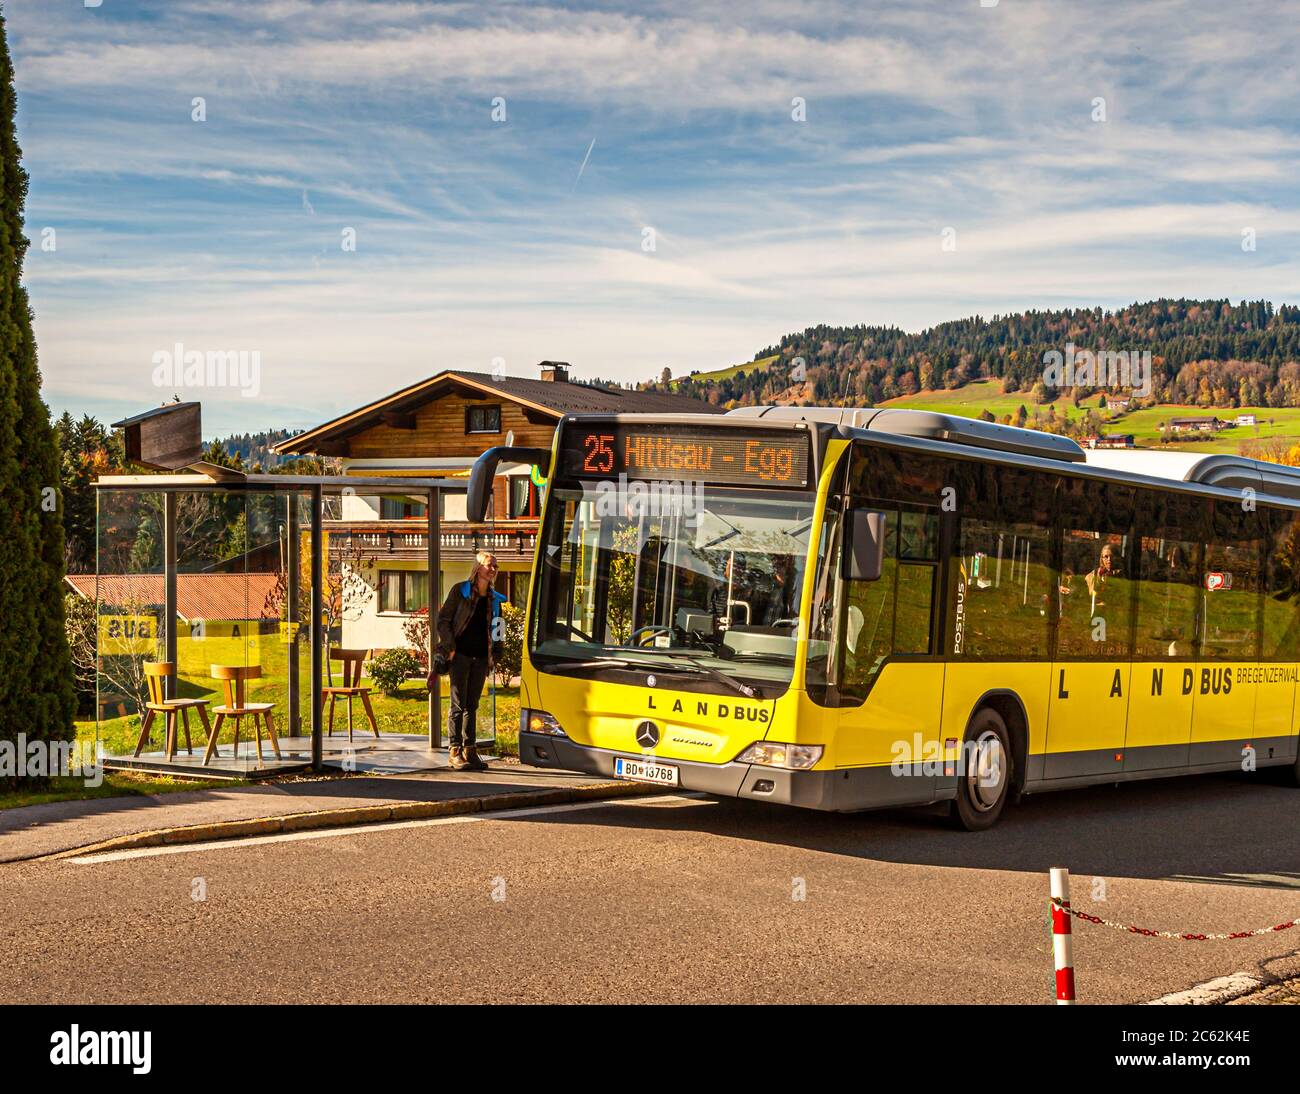 AUTOBUS: FERMATA Zwing, progettato da Smiljan Radic, Cile. I rifugi per autobus Krumbach sono stati progettati da architetti di tutto il mondo, che attirano l'attenzione sul servizio di mobilità quotidiano. Bregenzerwald Austria Foto Stock